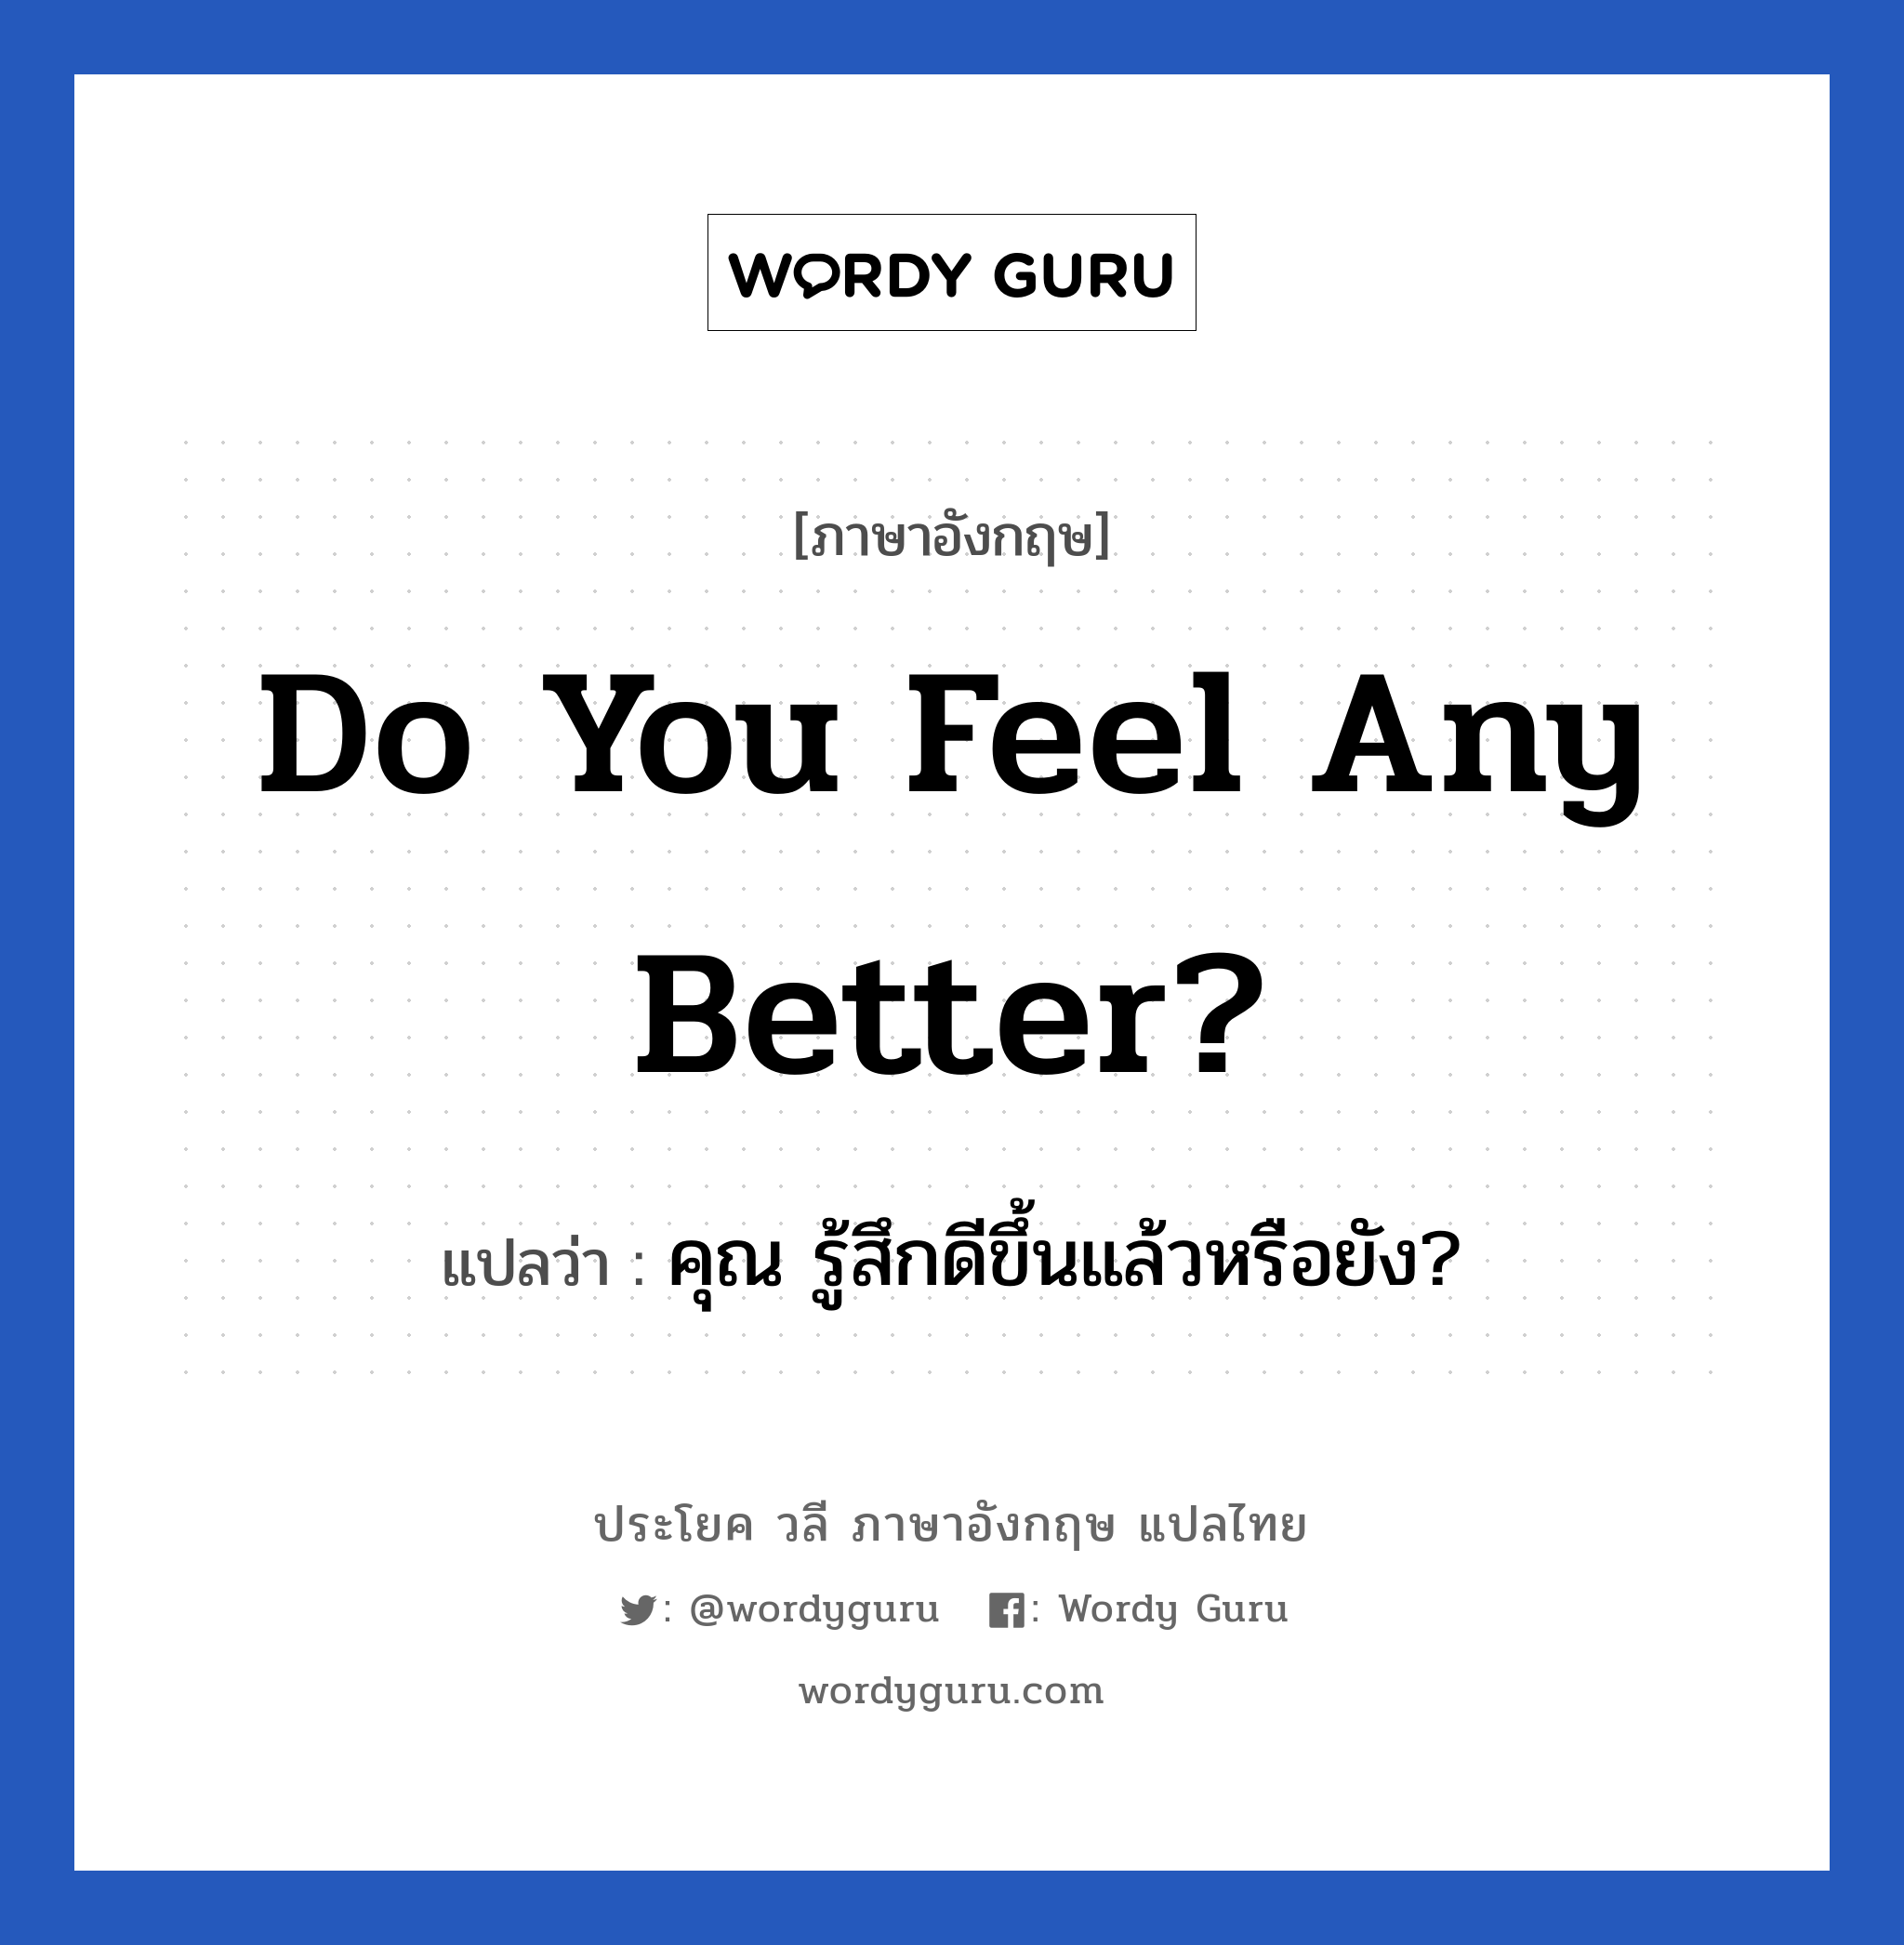 คุณ รู้สึกดีขึ้นแล้วหรือยัง? ภาษาอังกฤษ?, วลีภาษาอังกฤษ คุณ รู้สึกดีขึ้นแล้วหรือยัง? แปลว่า Do you feel any better?